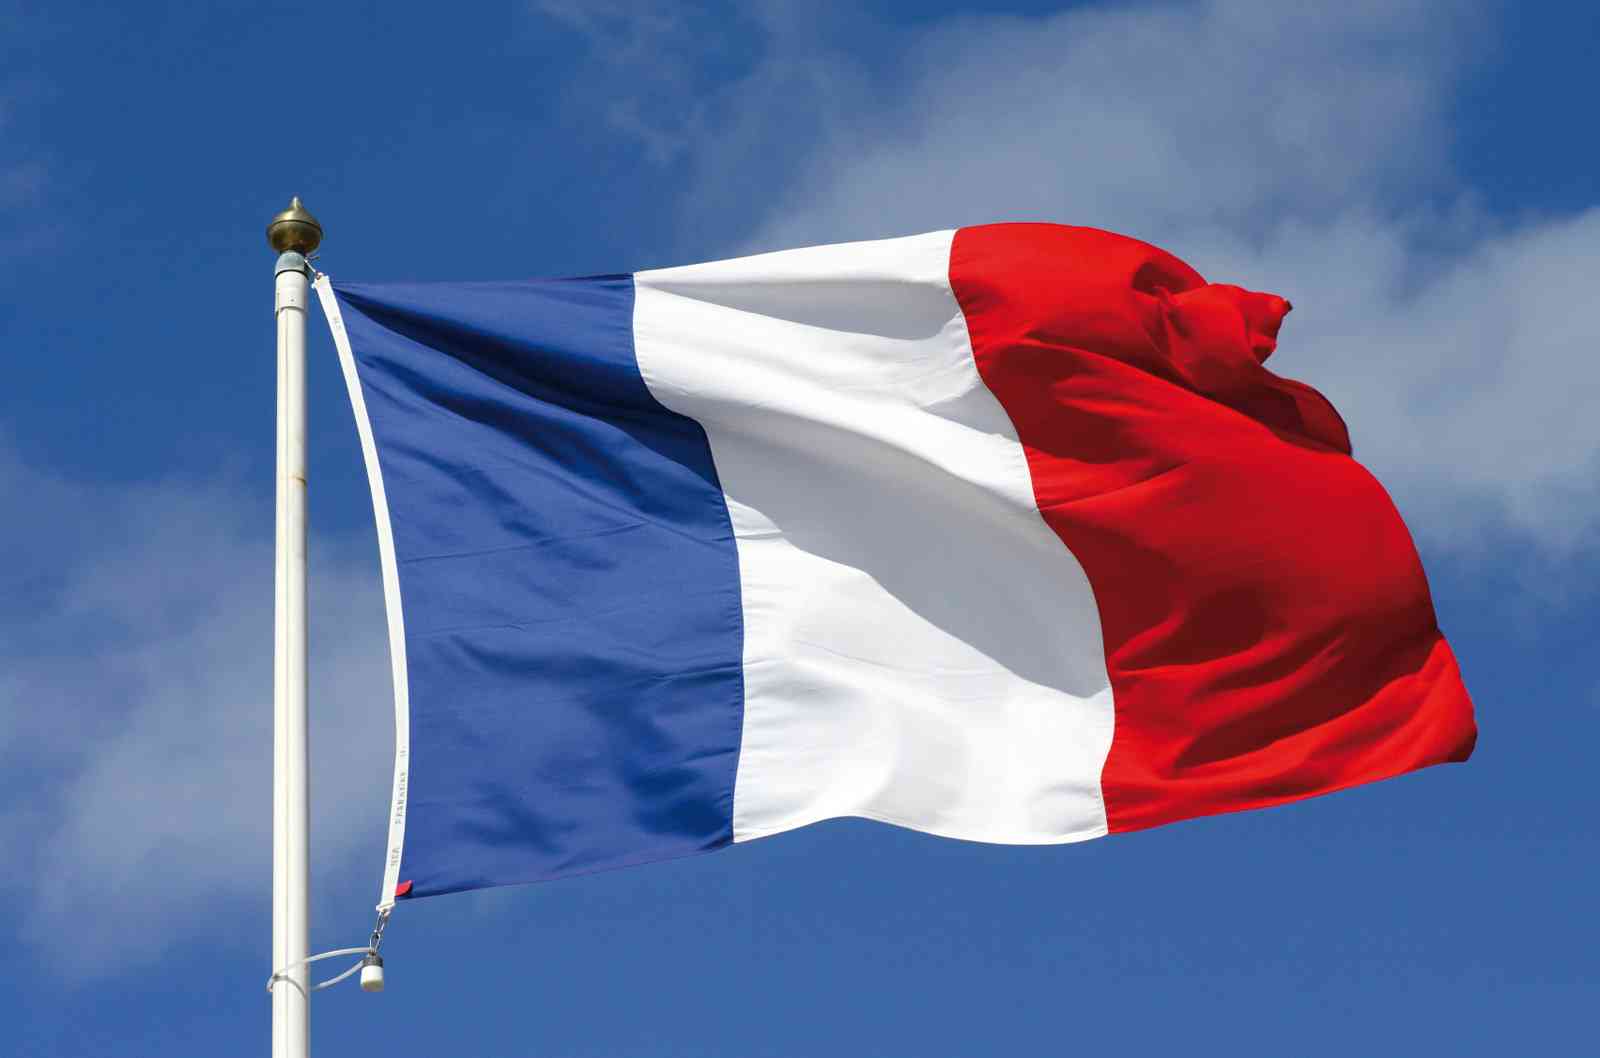 فرنسا سترسل المساعدات الى سوريا عبر المنظمات غير الحكومية